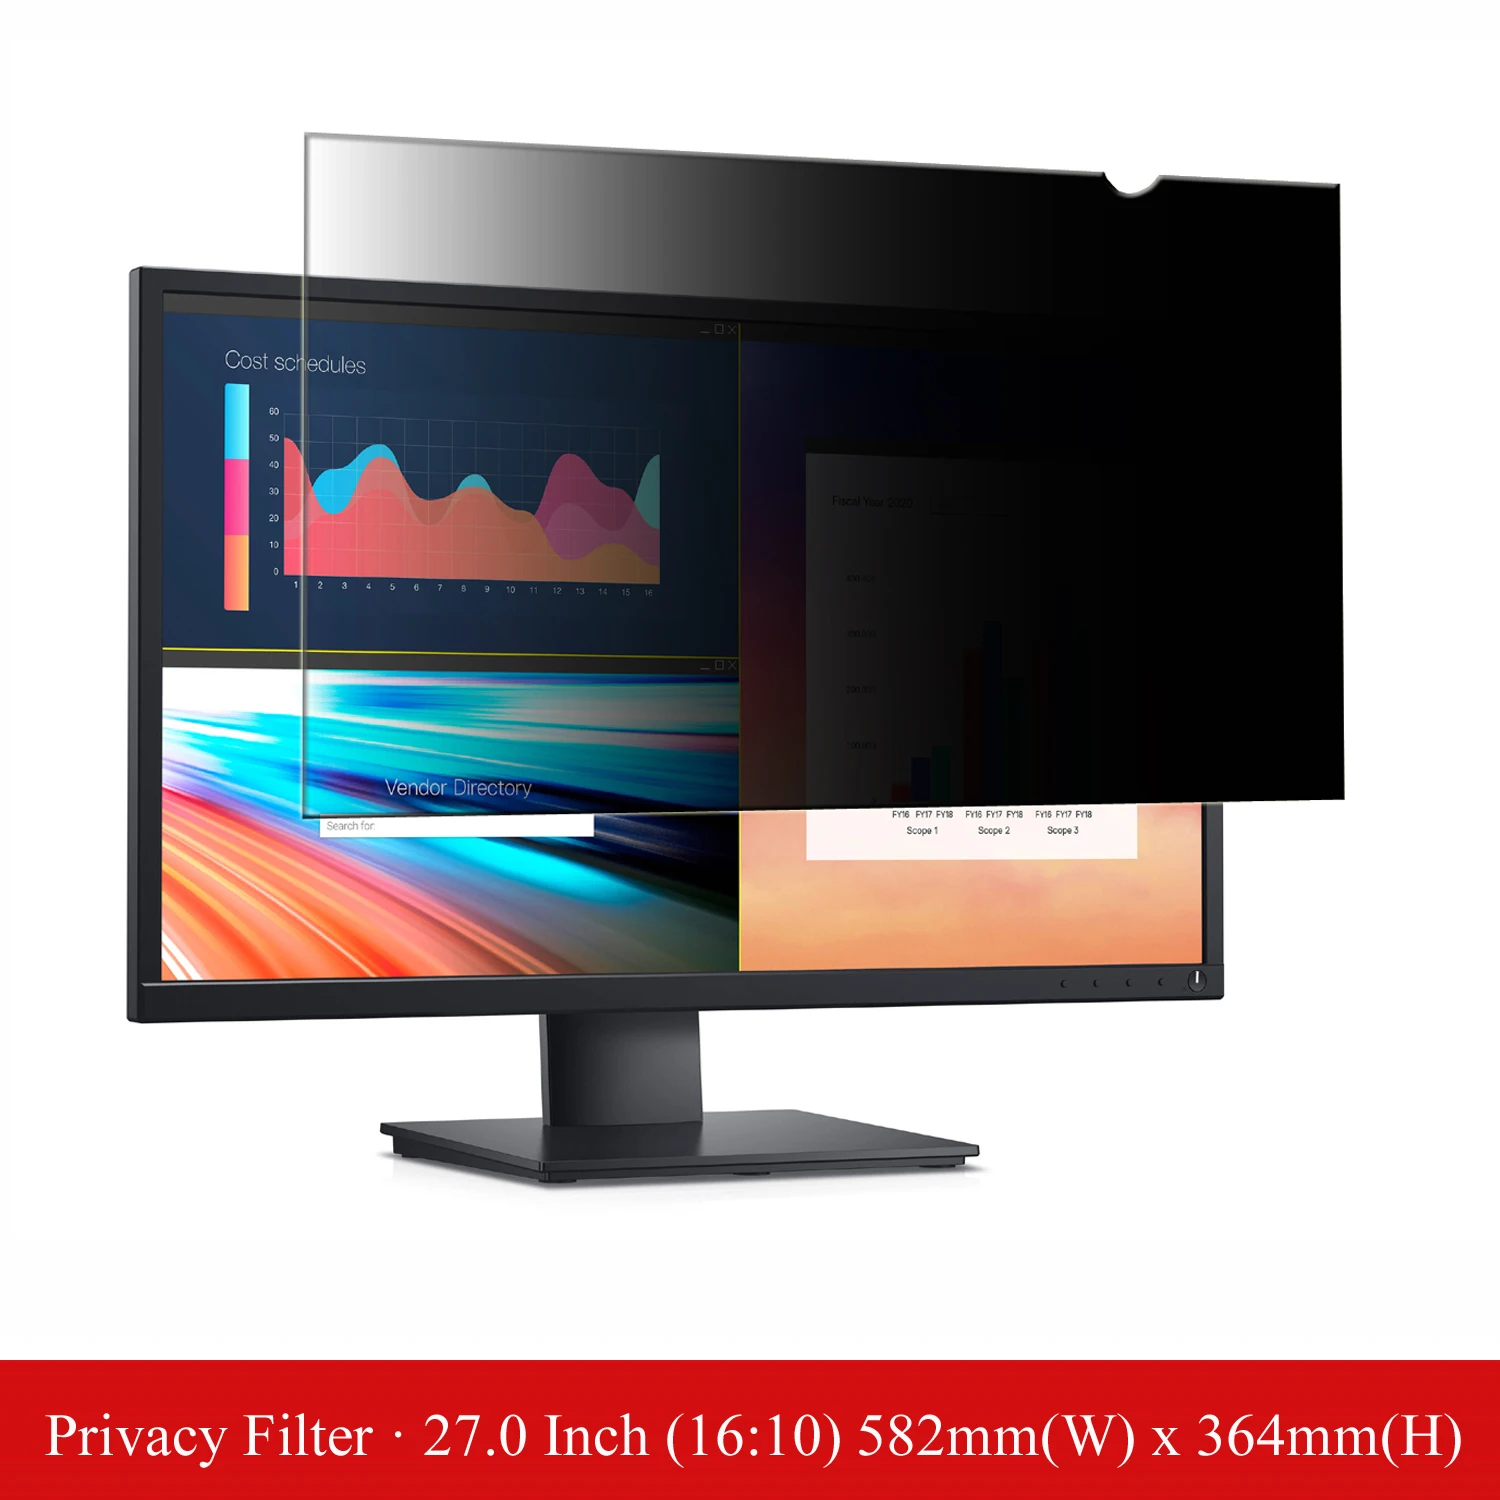 27 inch Anti-Glare Computer Privacy Filter Screen Protector Film for Desktop Monitor Widescreen 16:10 Aspect Ratio